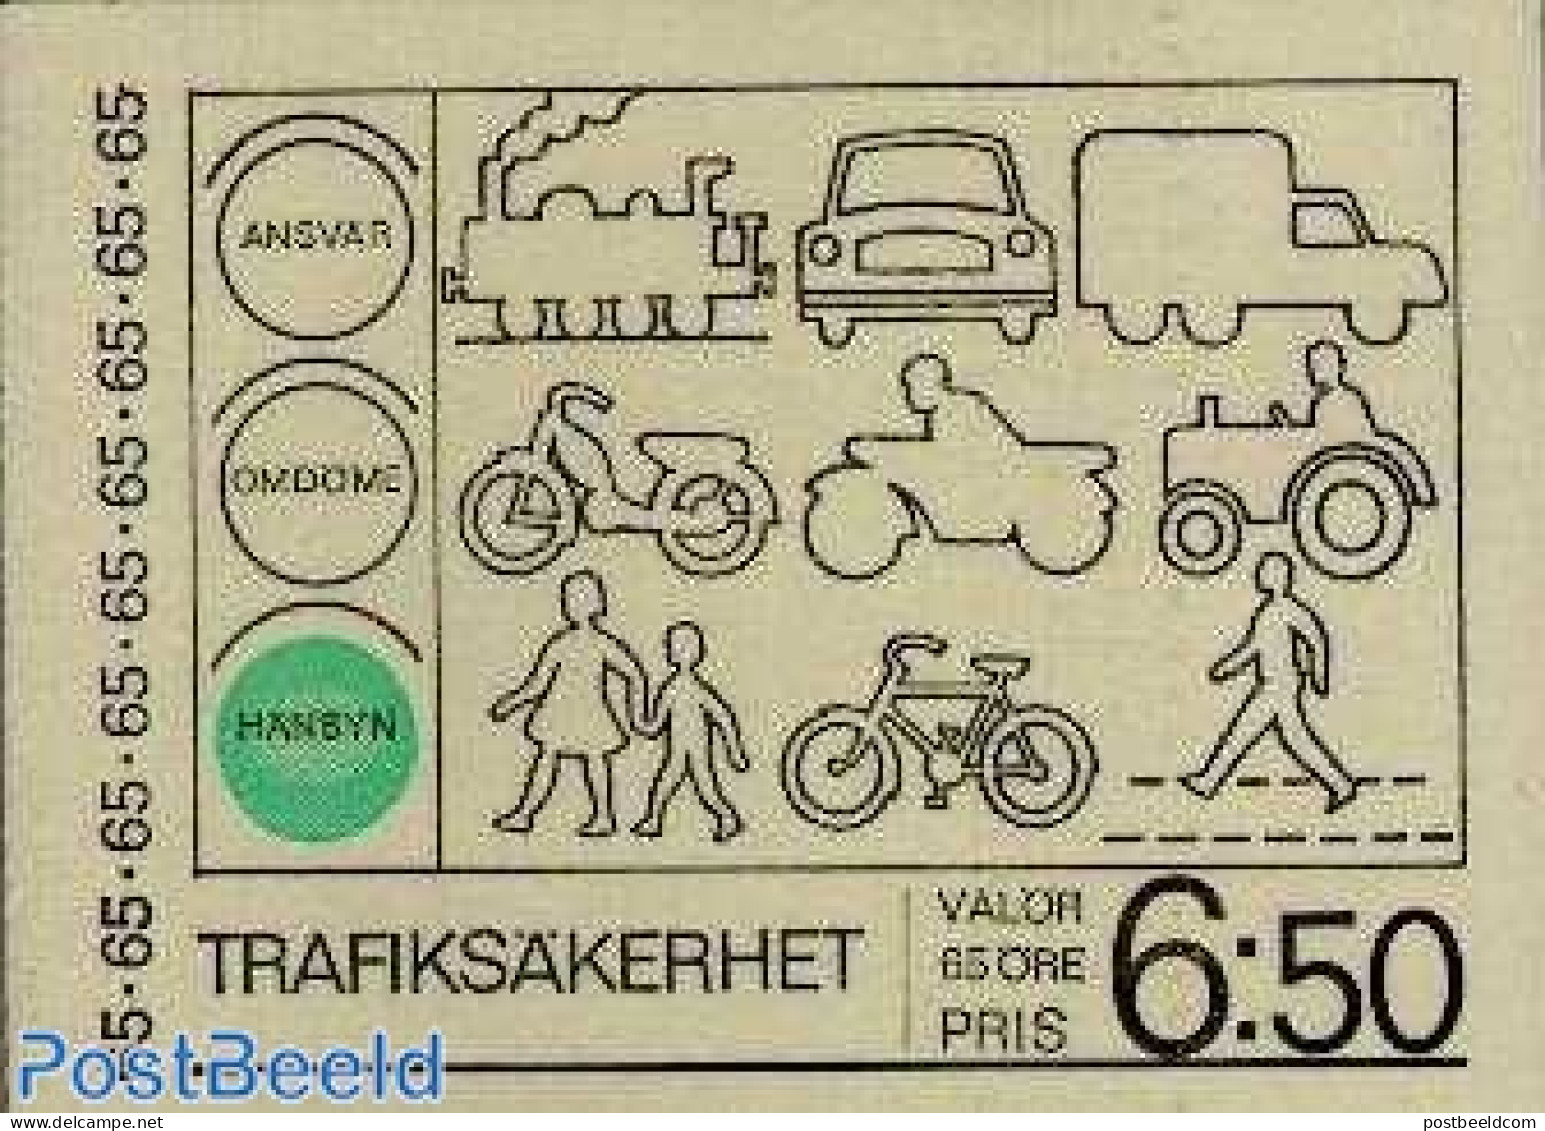 Sweden 1971 Traffic Safety Booklet, Mint NH, Transport - Stamp Booklets - Traffic Safety - Ongebruikt